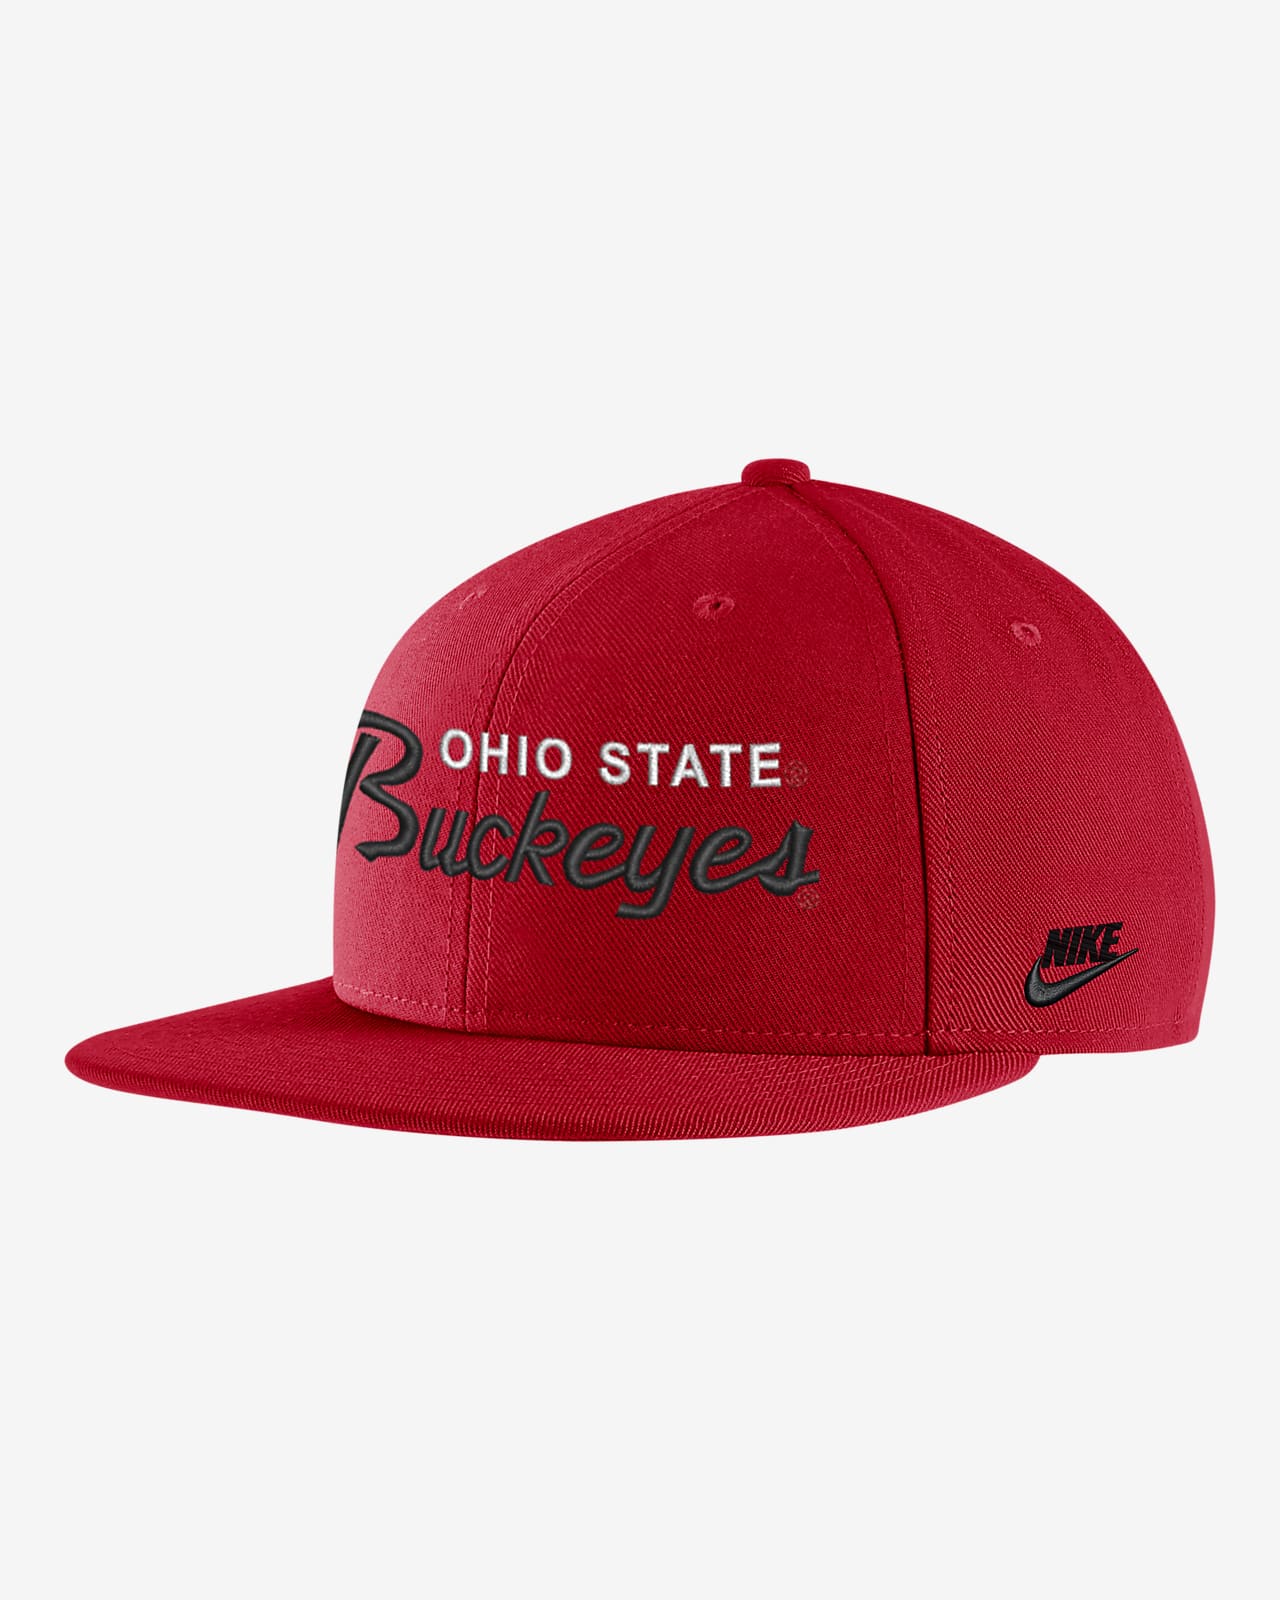 Ohio State Nike College Cap